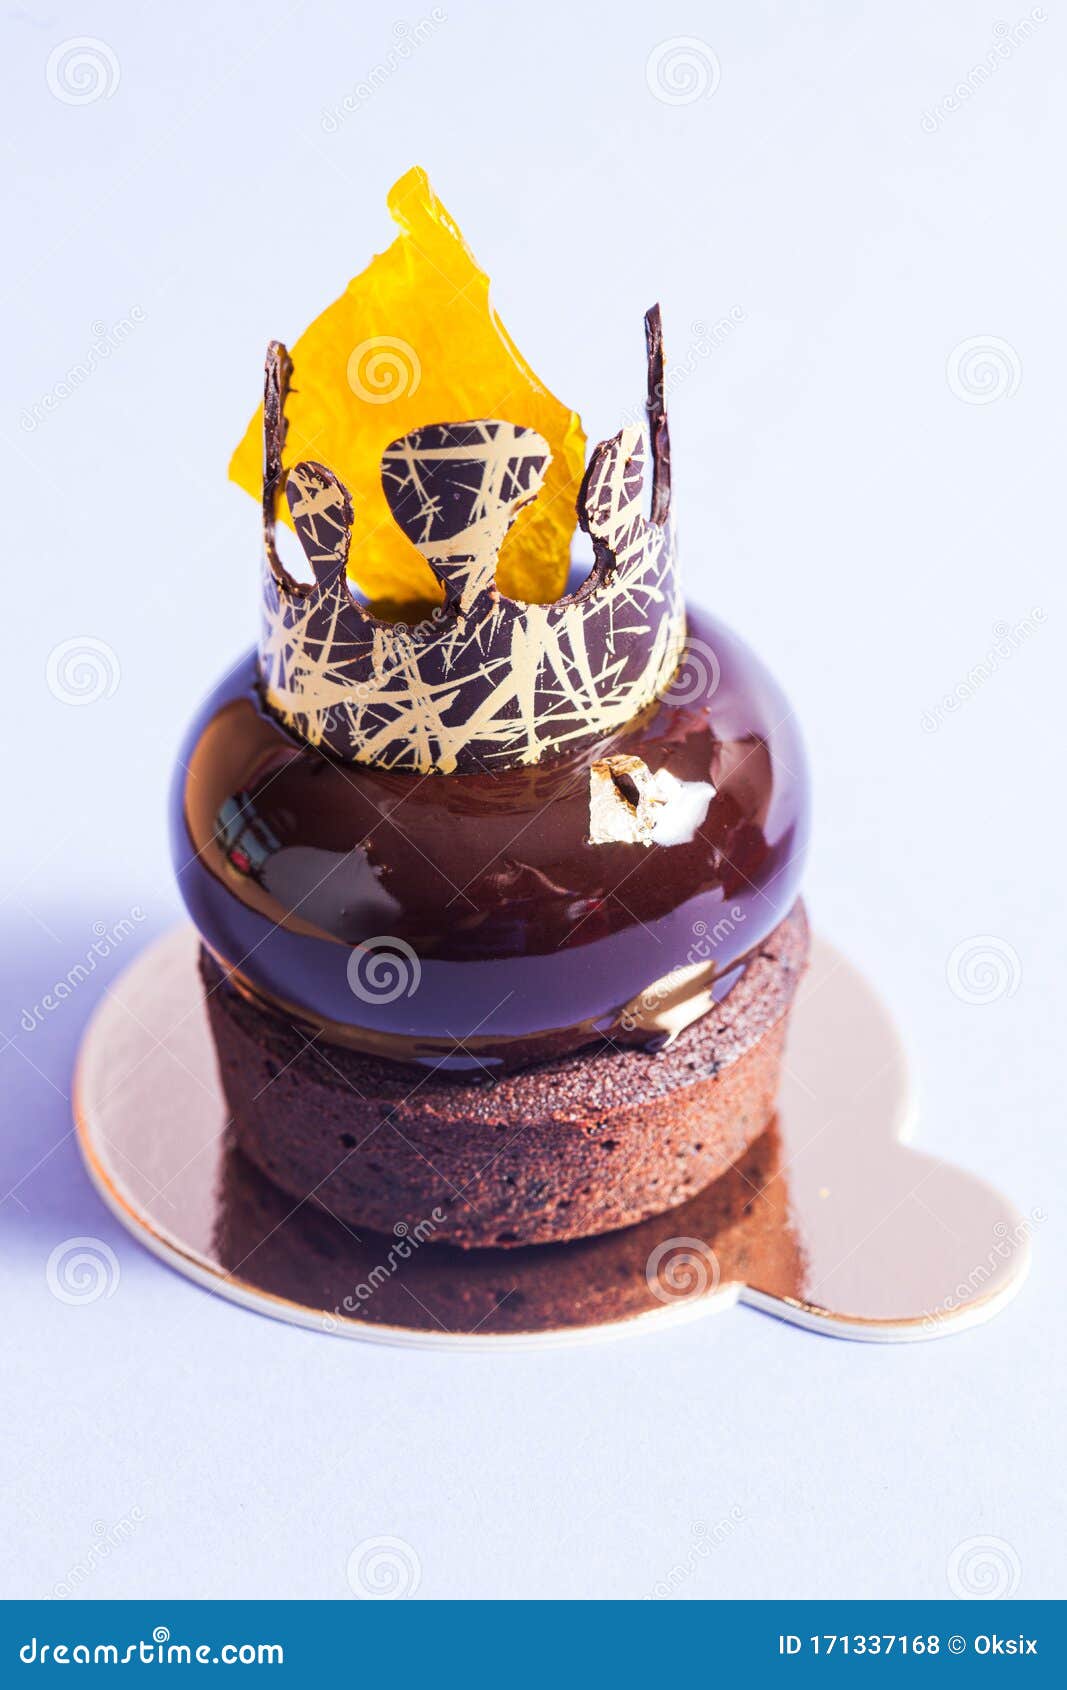 Eggless Chocolate Truffle Heart Cake 1/2kg – Ghasitaram Gifts